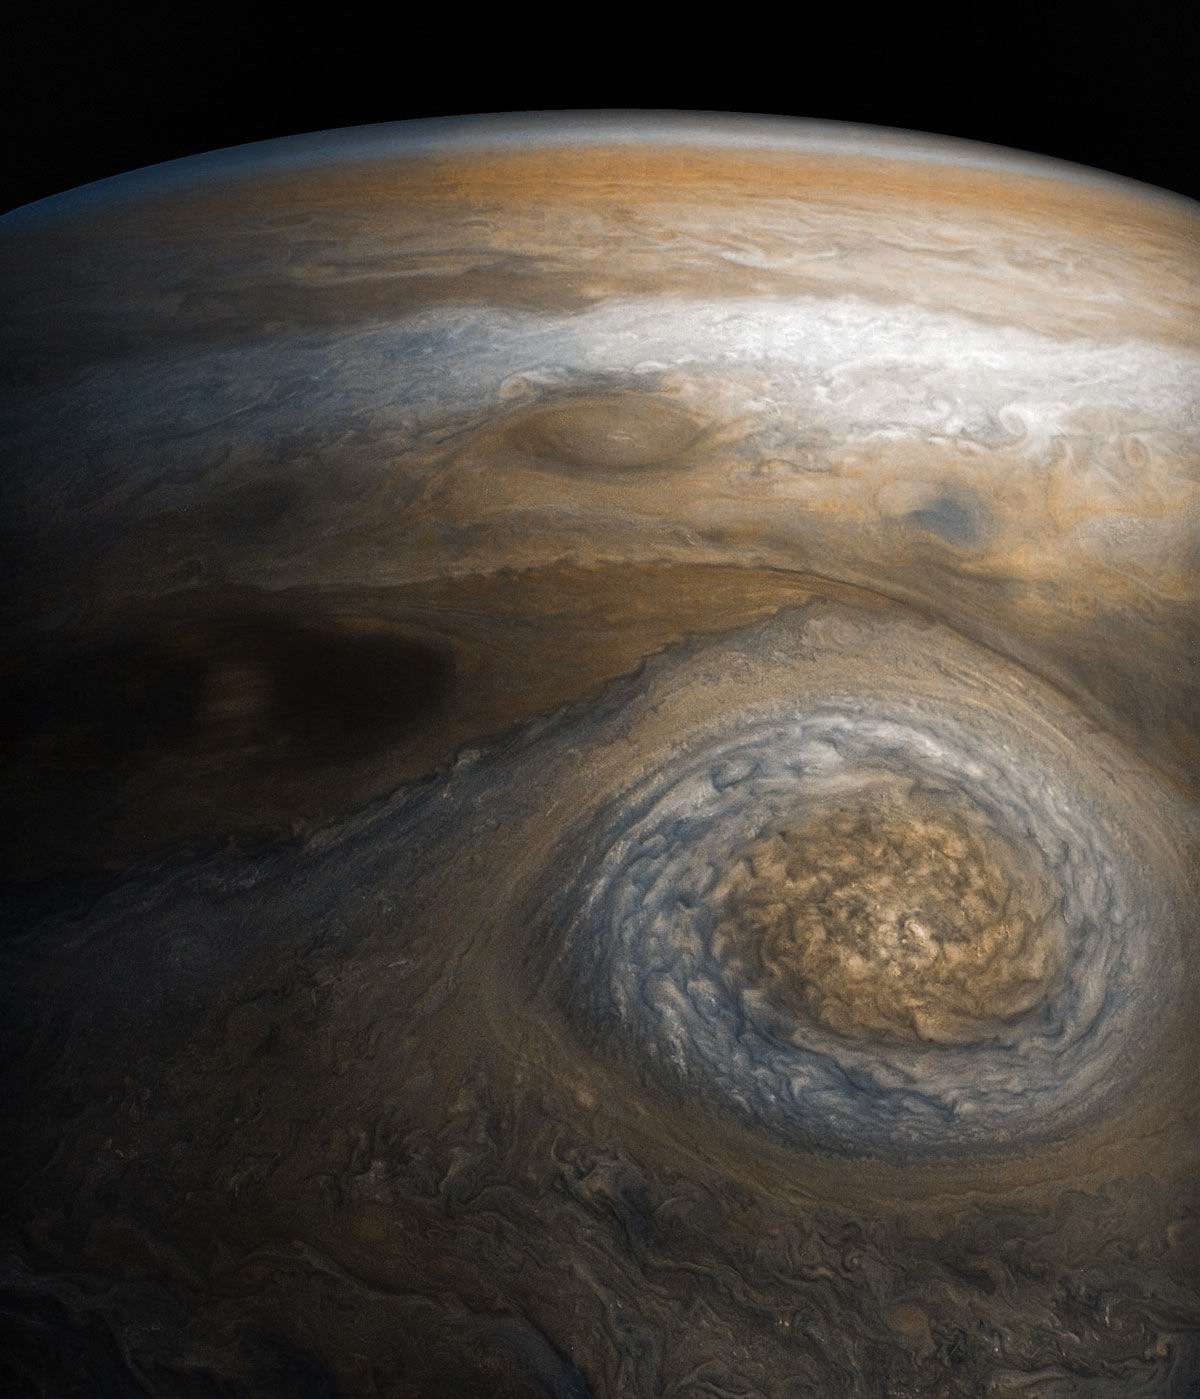 Imagens de close-up de Jpiter revelam uma paisagem impressionista de gases turbulentos 09